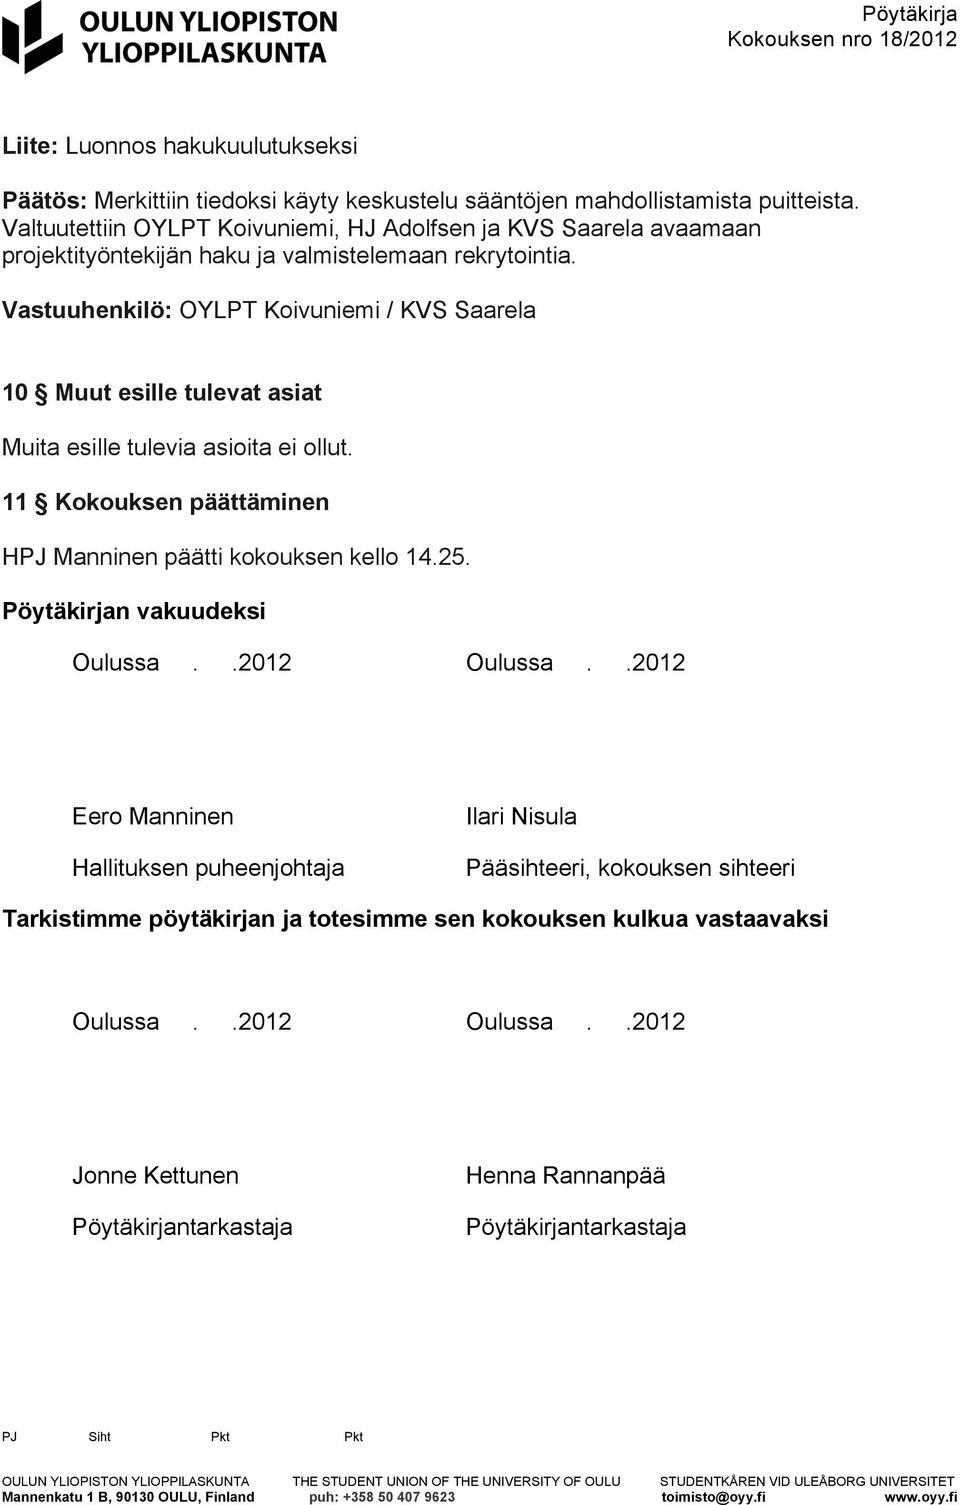 Vastuuhenkilö: OYLPT Koivuniemi / KVS Saarela 10 Muut esille tulevat asiat Muita esille tulevia asioita ei ollut. 11 Kokouksen päättäminen HPJ Manninen päätti kokouksen kello 14.25.